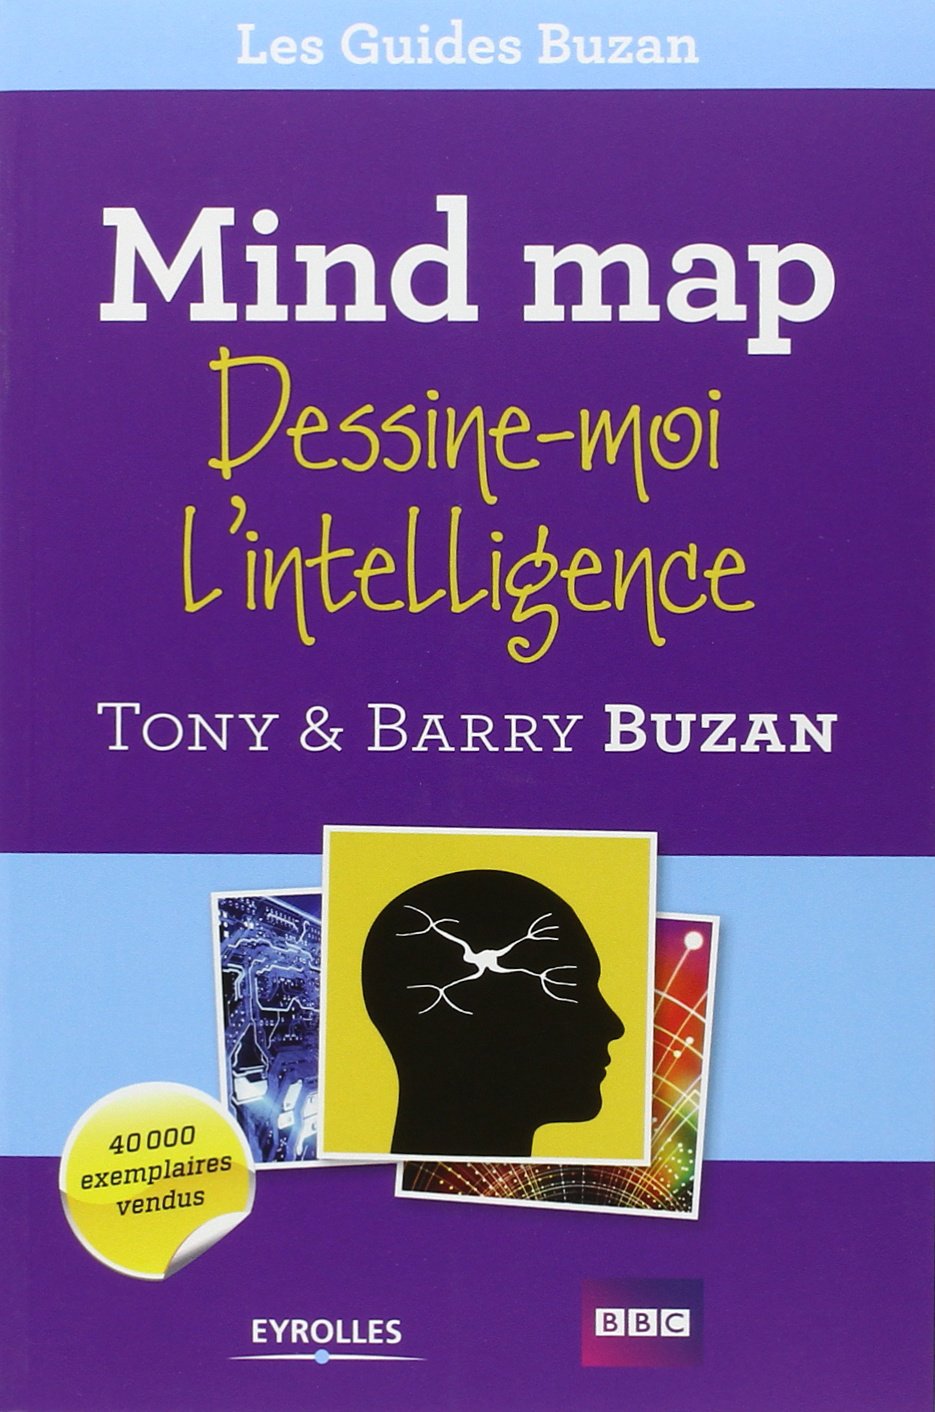 mind-map-dessine-moi-lintelligence